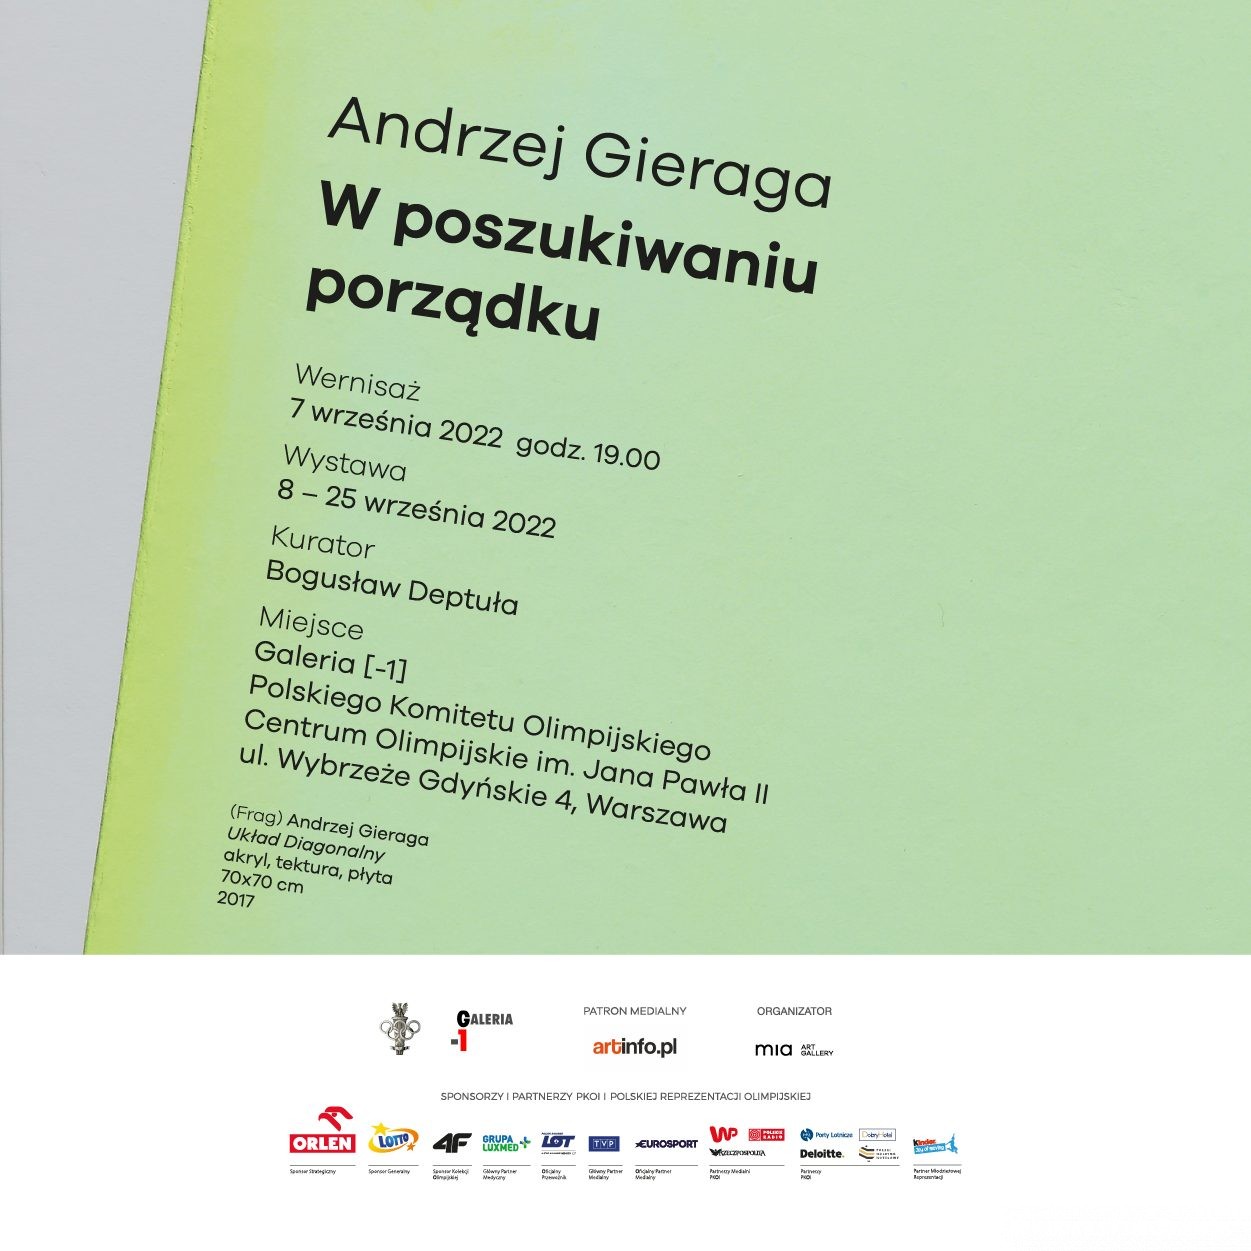 Andrzej Gieraga – „W poszukiwaniu porządku”